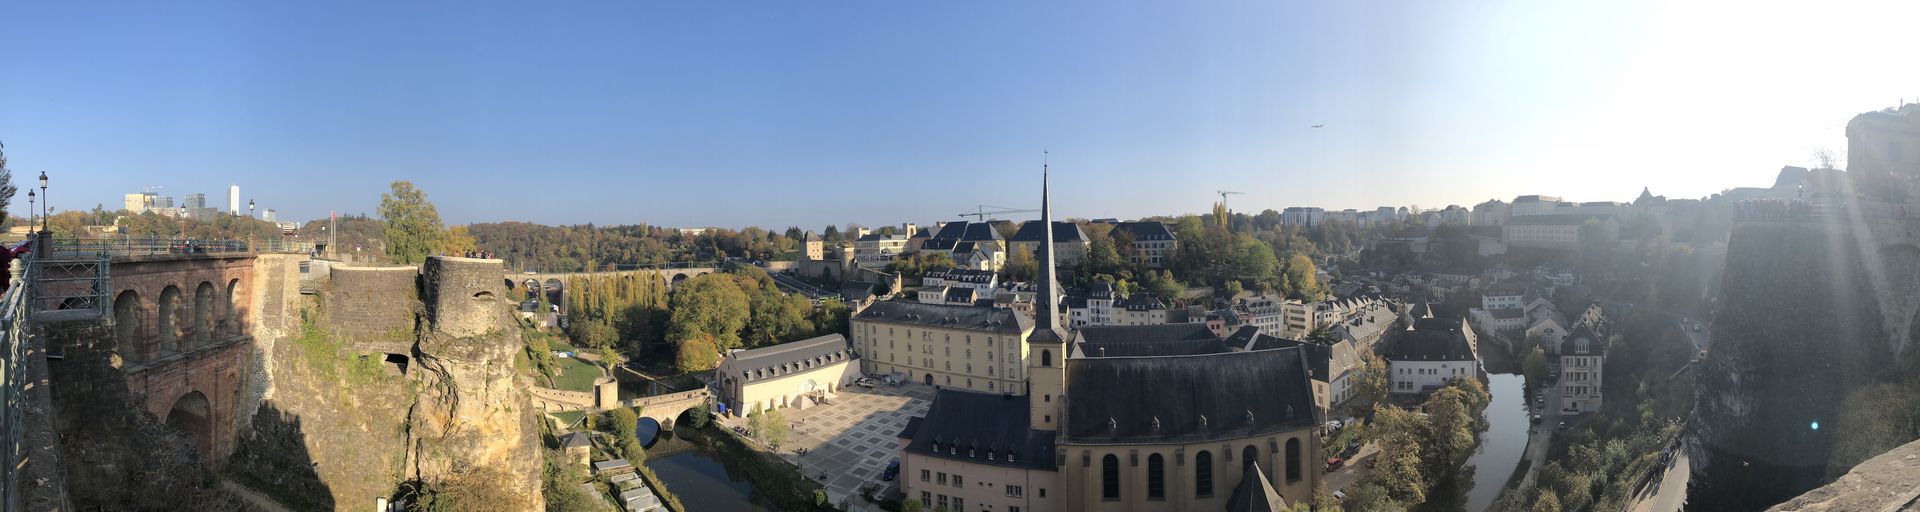 Die Altstadt Luxemburgs trägt den Titel UNESCO-Weltkulturerbe zu Recht. Hier schlägt das traditionelle Herz Luxemburgs - Rieslingspastete inklusive.